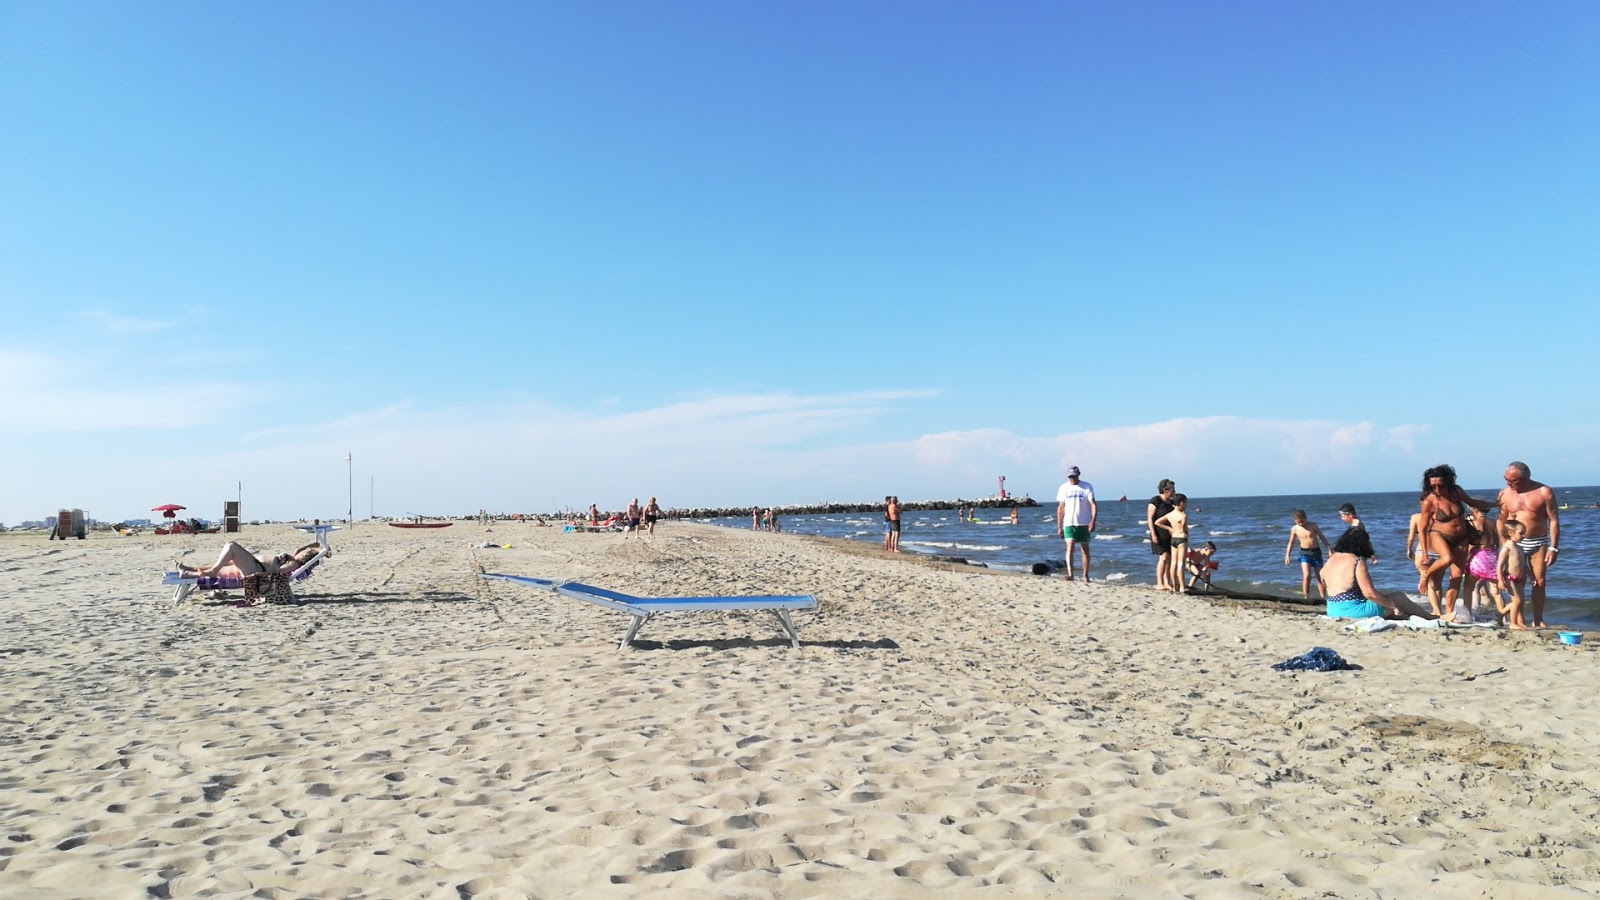 Valokuva Spiaggia Lido Degli Estensiista. pinnalla harmaa hiekka:n kanssa